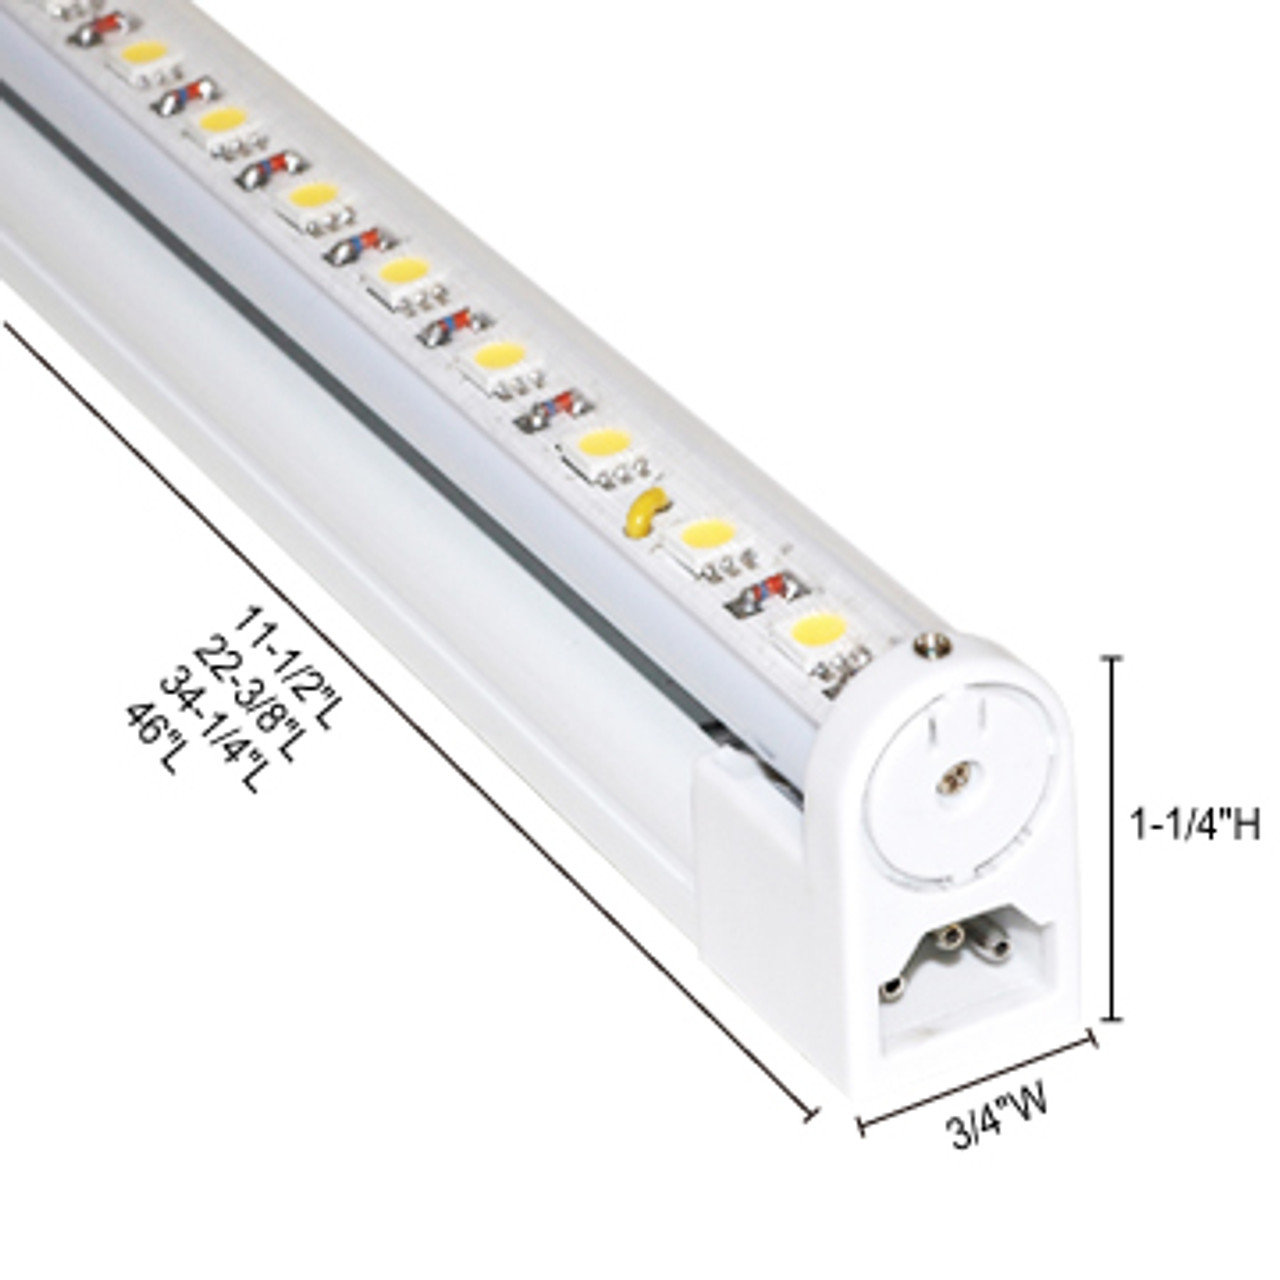 JESCO Lighting S201-12/40 S201 12?ö LED Sleek Plus S201 Adjustable Linkable, 4000K, White